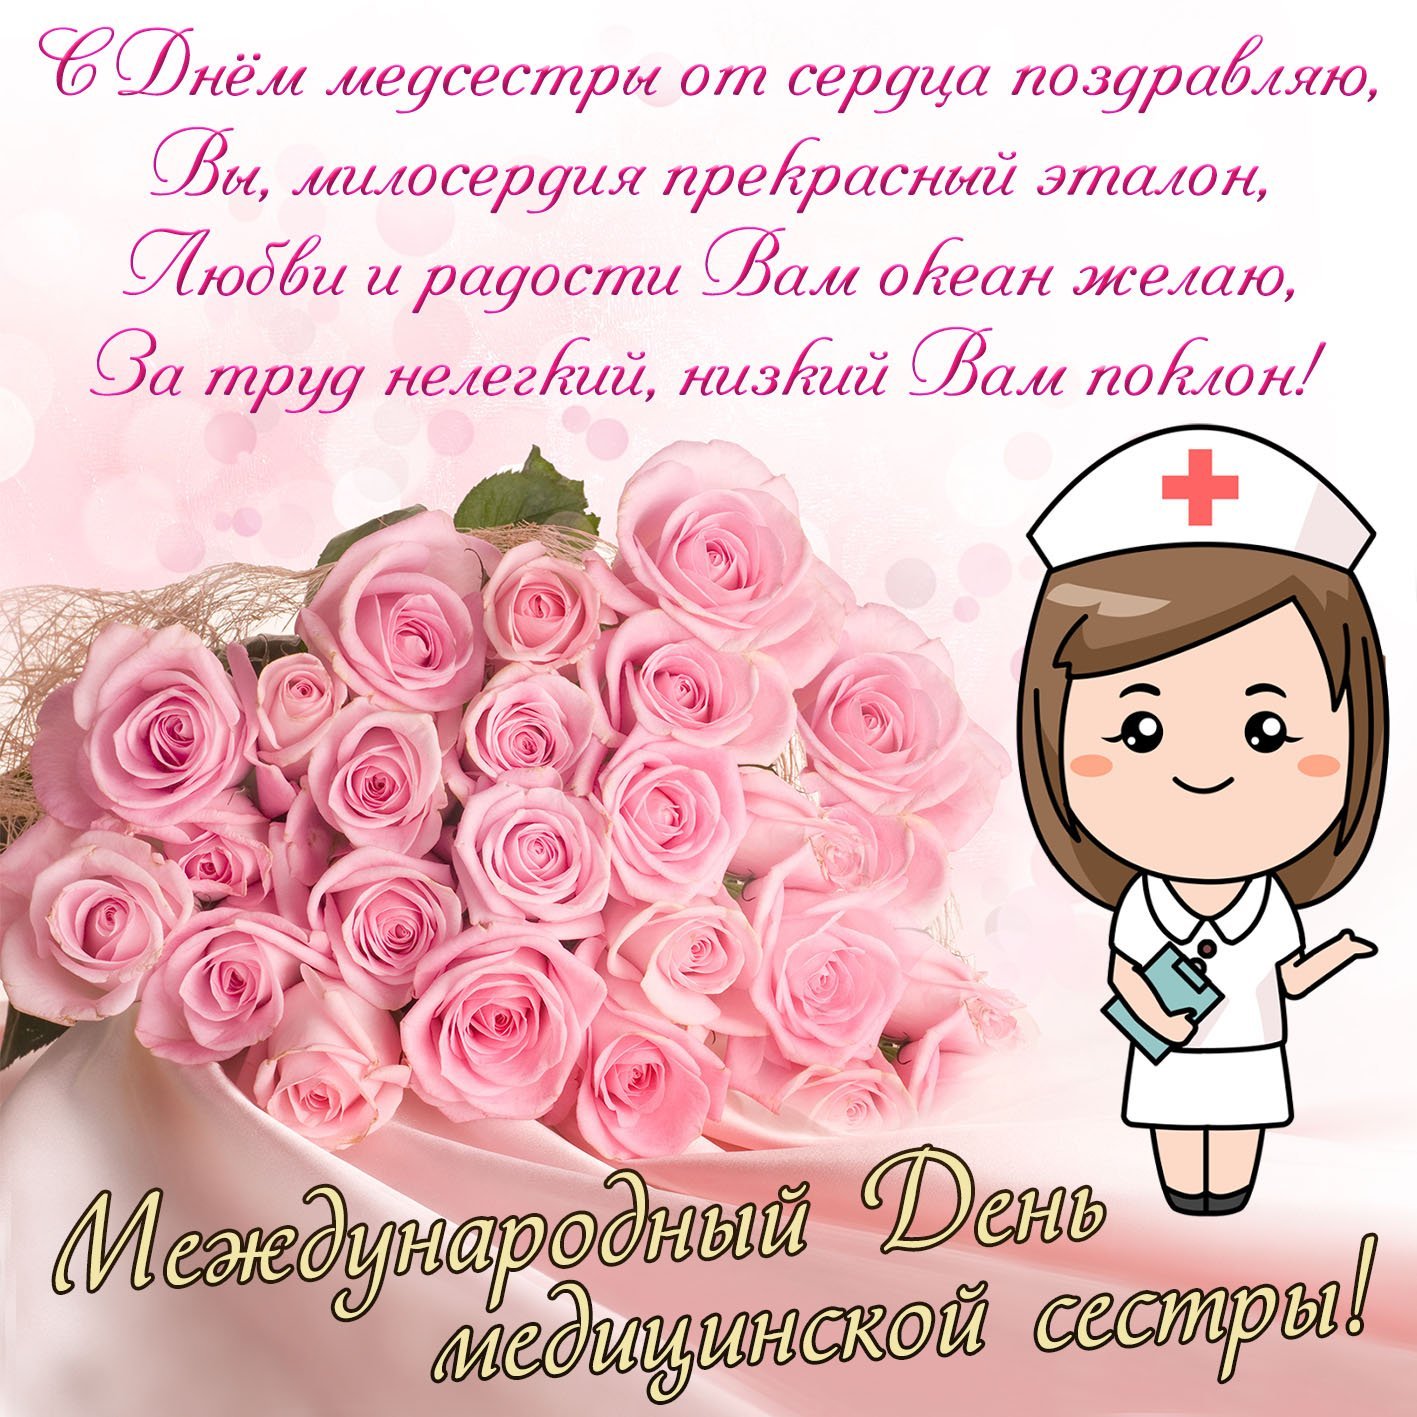 Поздравление медсестре с днем рождения - 71 фото